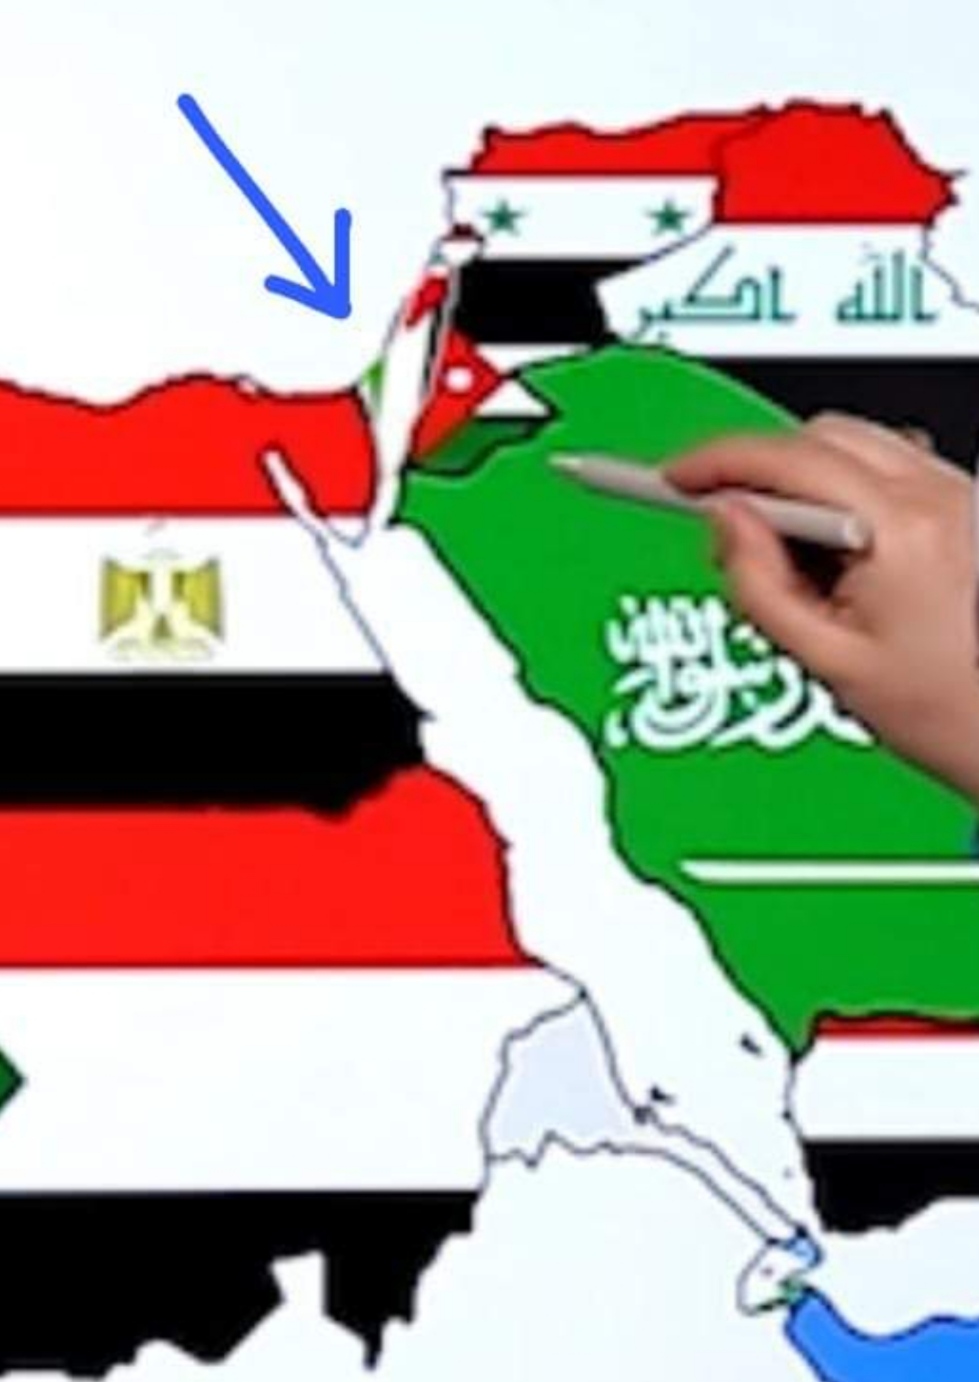 التربية تنفي صحة صورة لخريطة الوطن العربي على منصة درسك تخلو من علم فلسطين